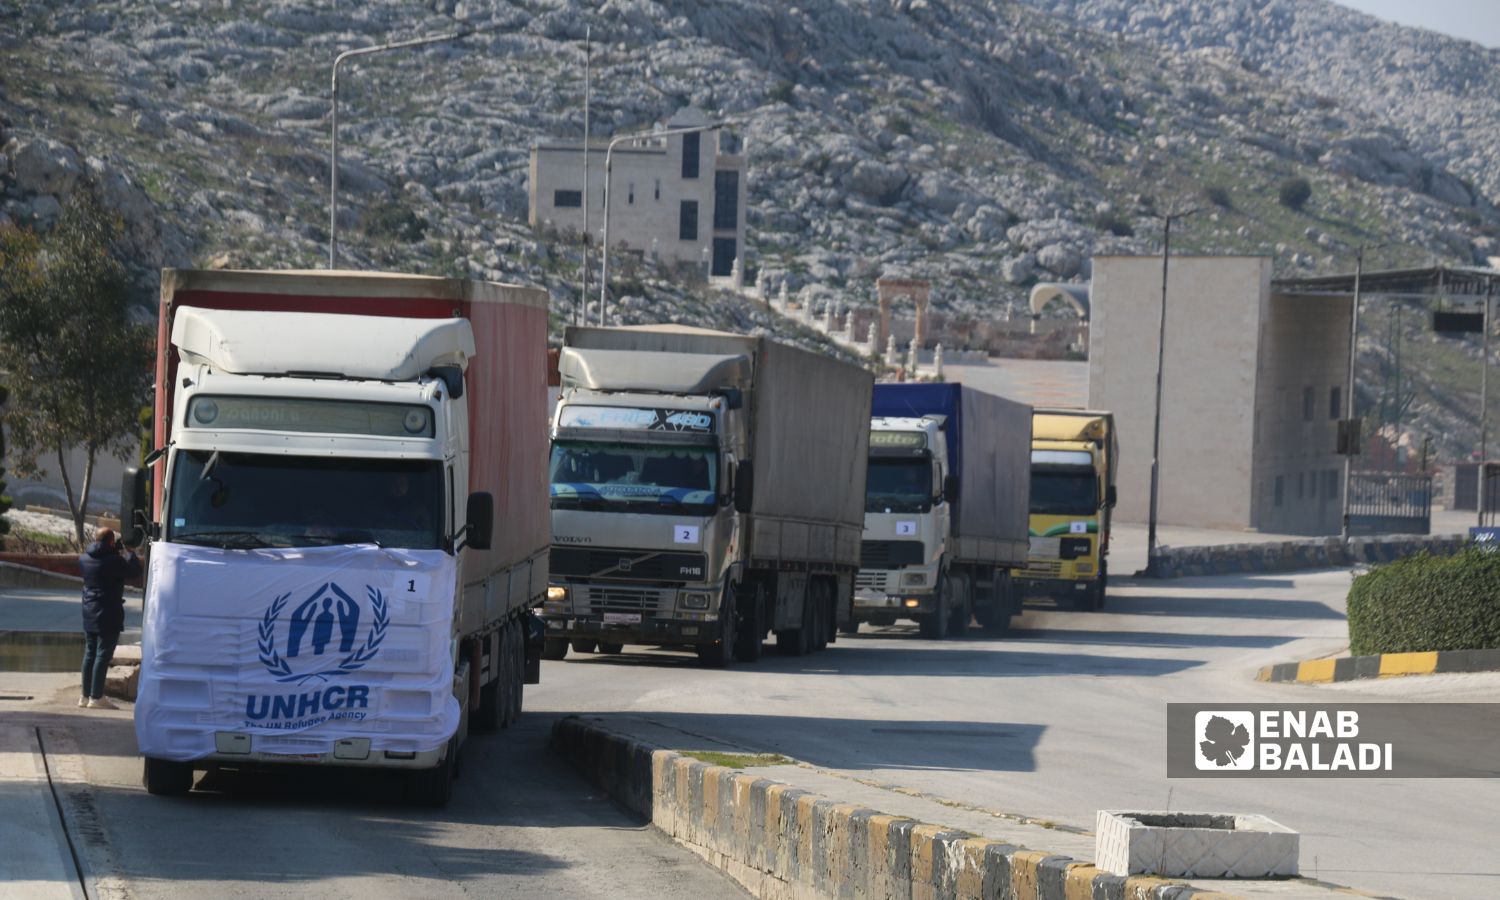 A UN aid convoy enters northern Syria through the Bab al-Hawa crossing - February 11, 2023 (Enab Baladi/Iyad Abdul Jawad)